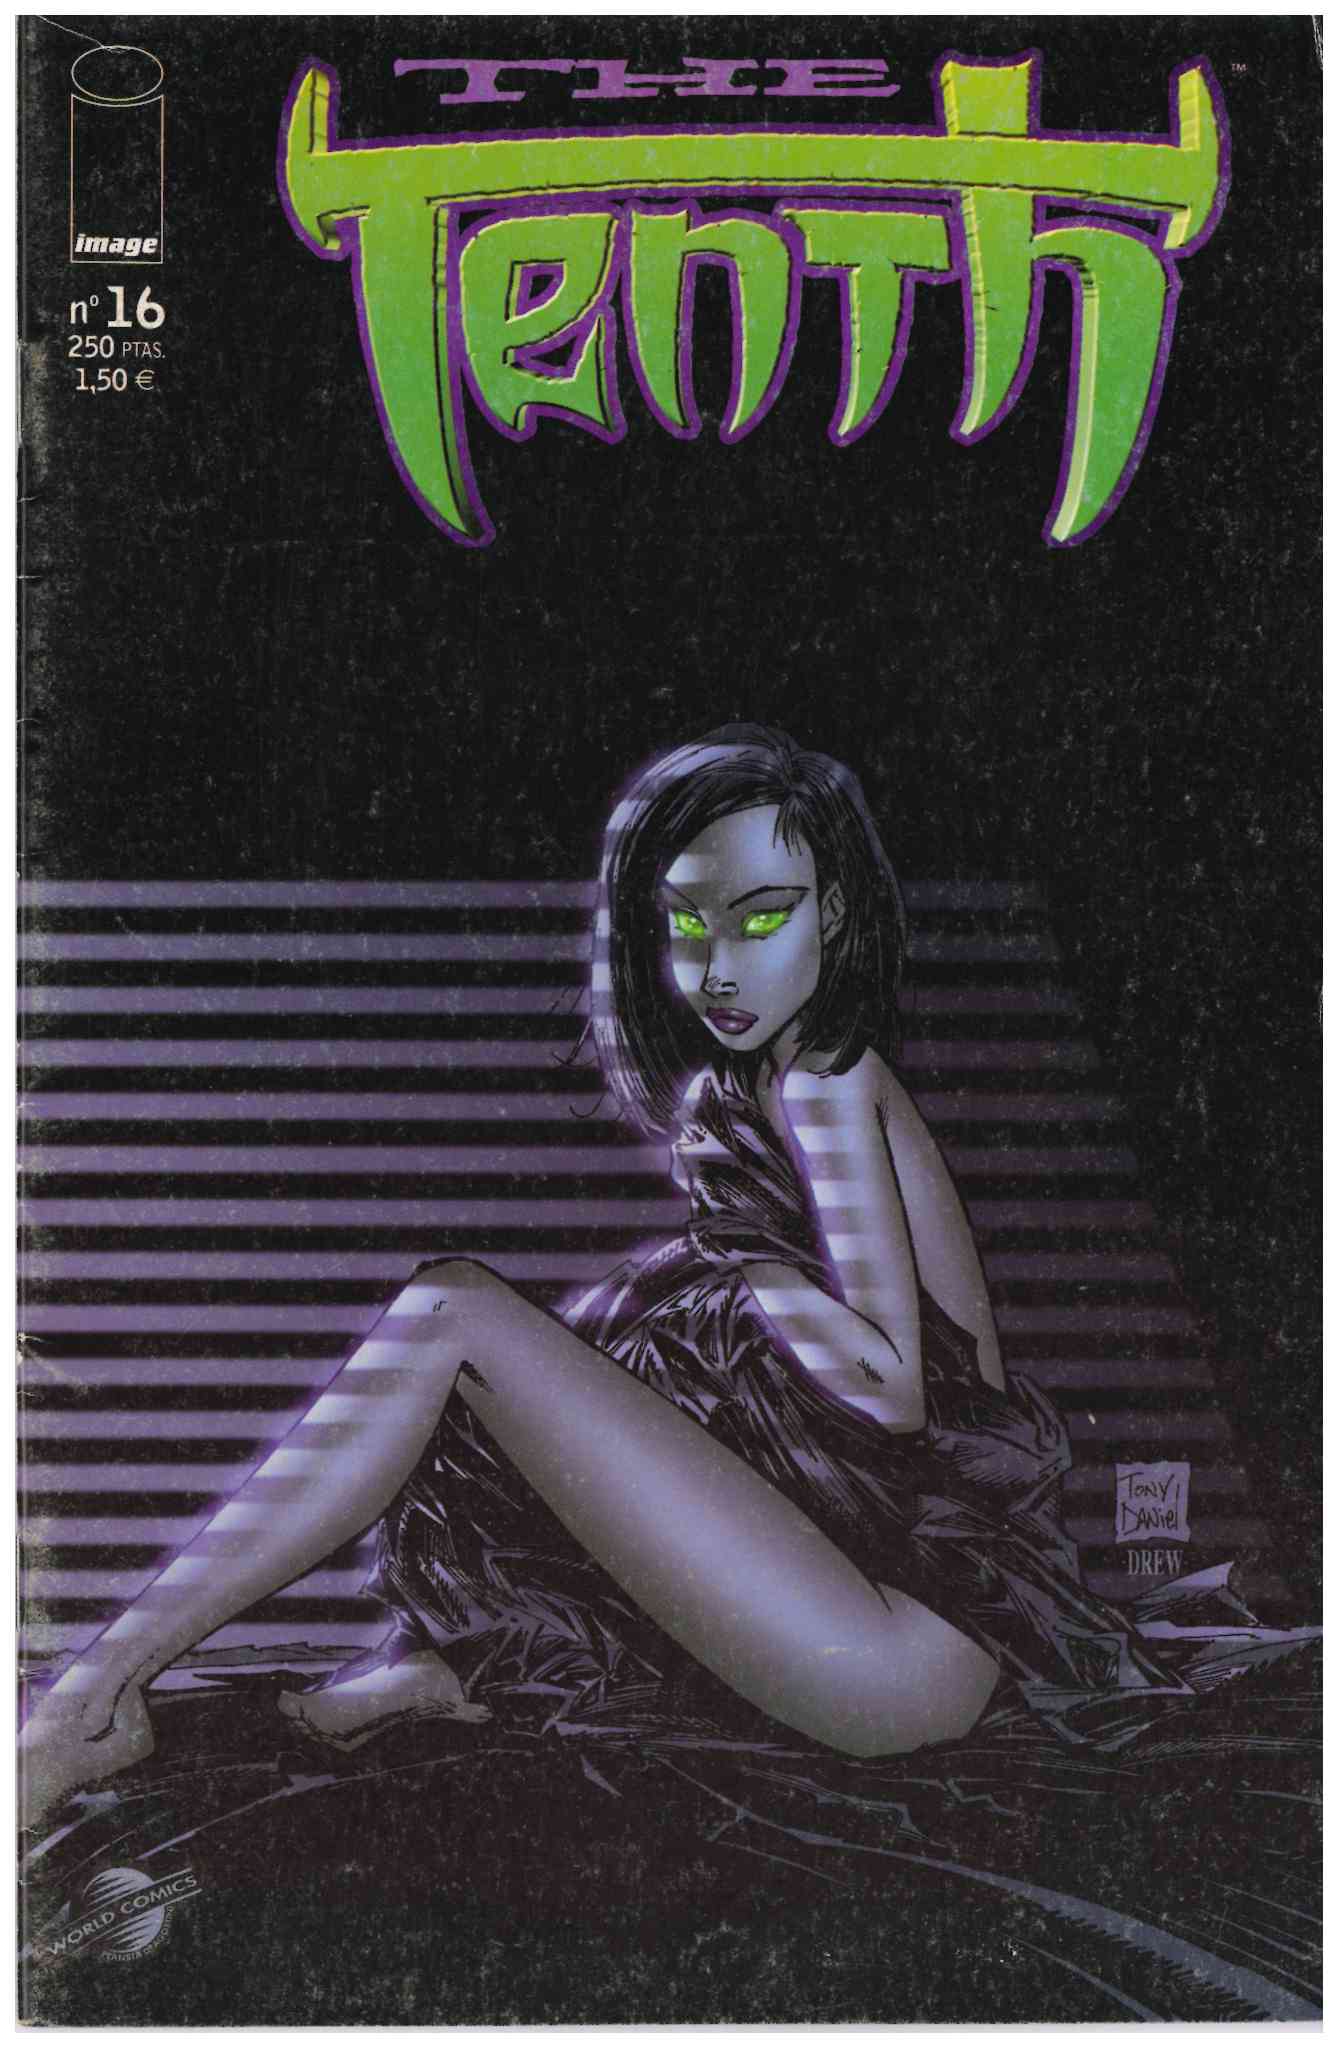 The Tenth v2. World Comics 1999. Nº 16